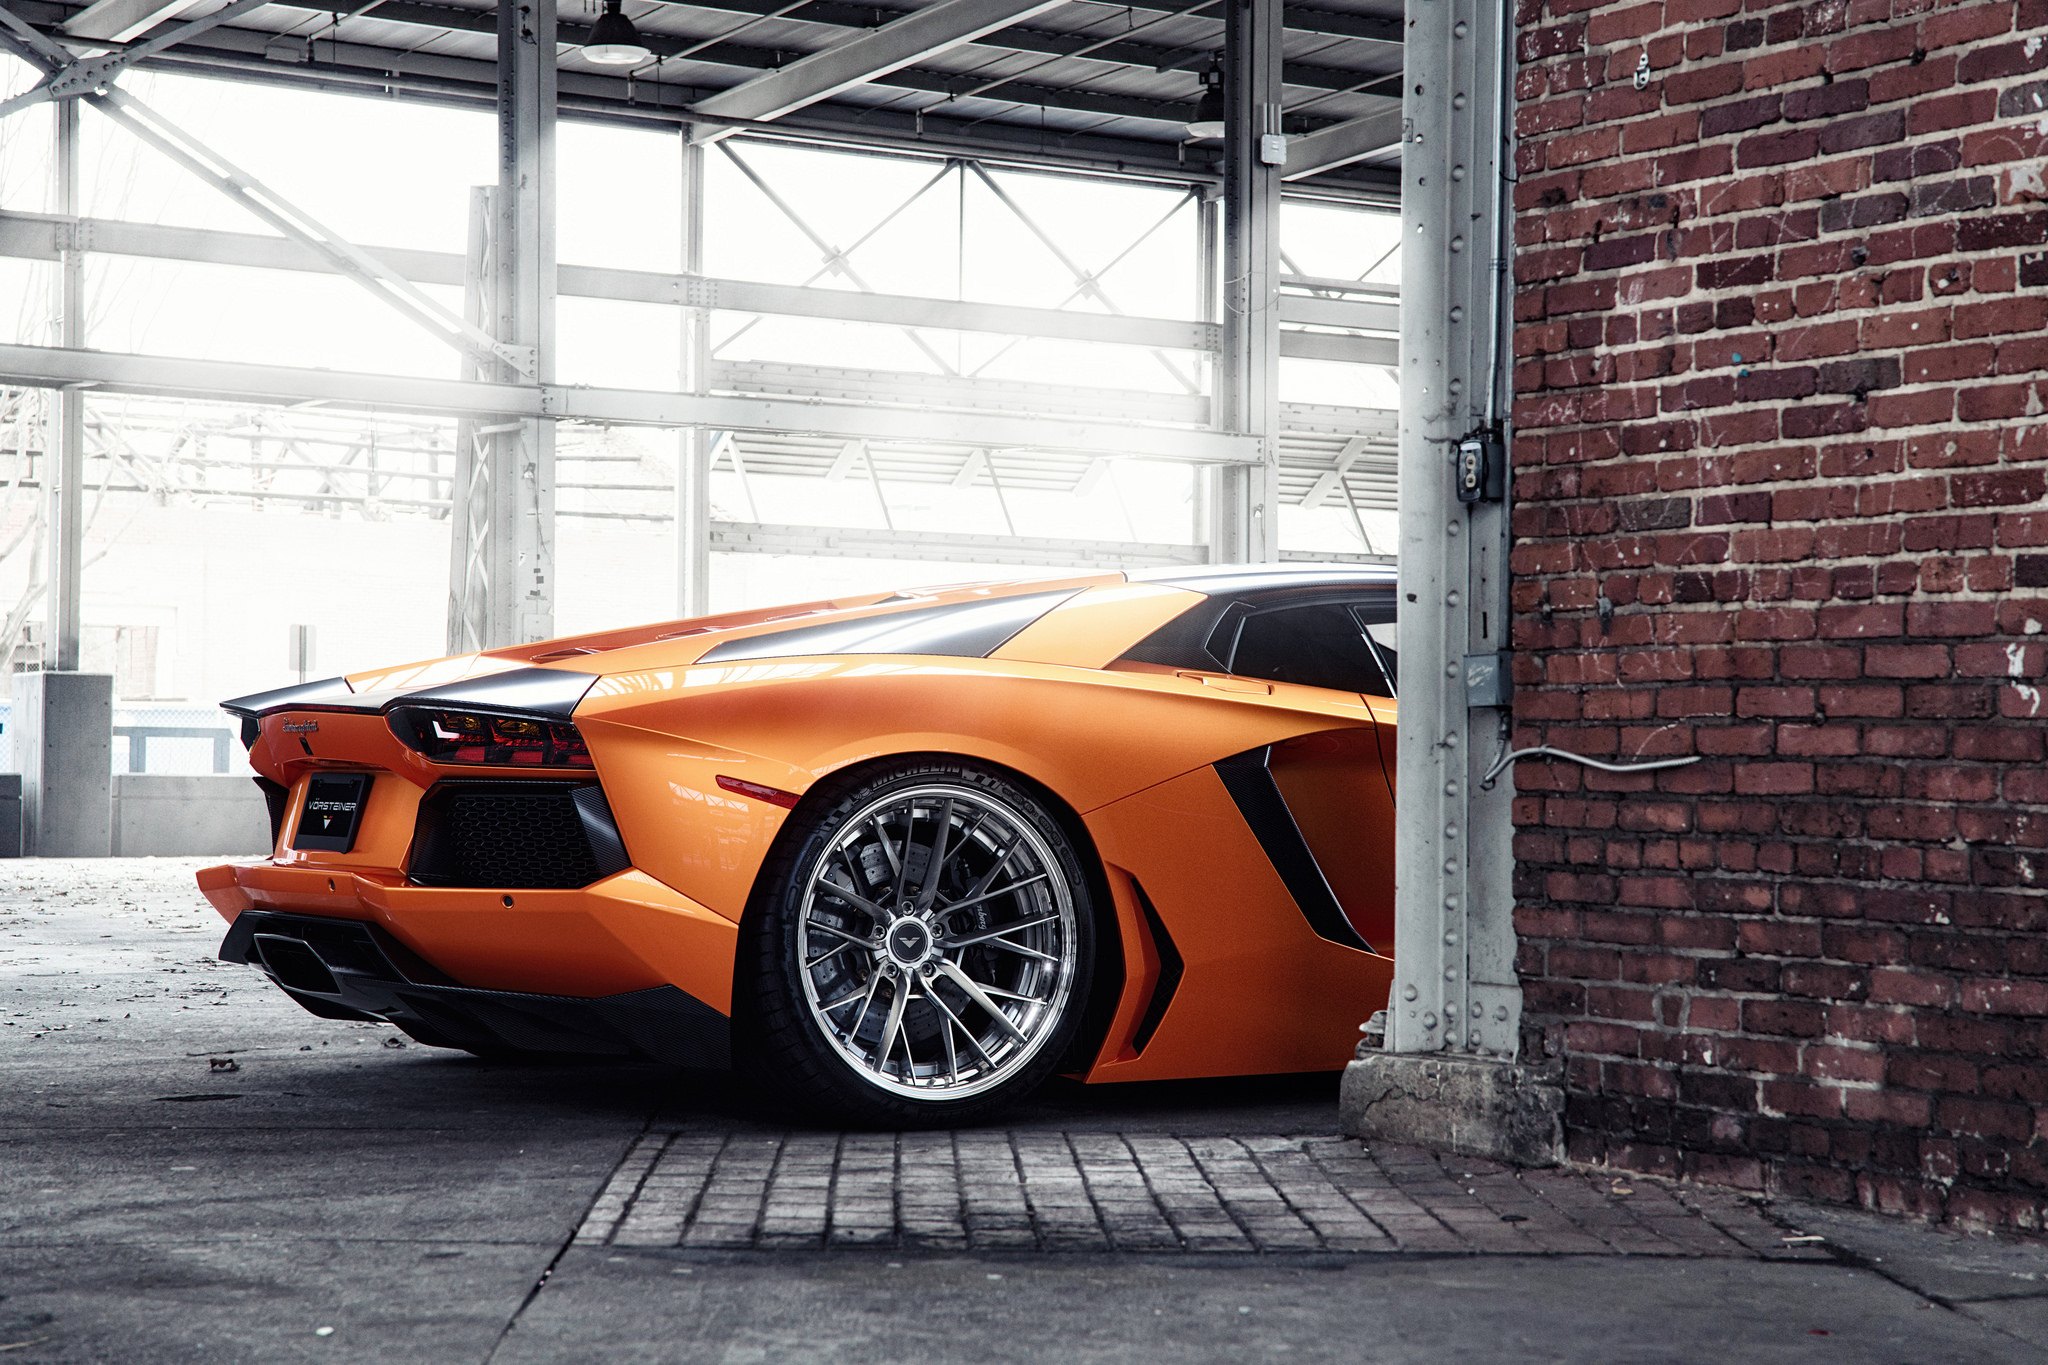 Chrome Vorsteiner Wheels on Orange Lamborghini Aventador - Photo by Vorsteiner